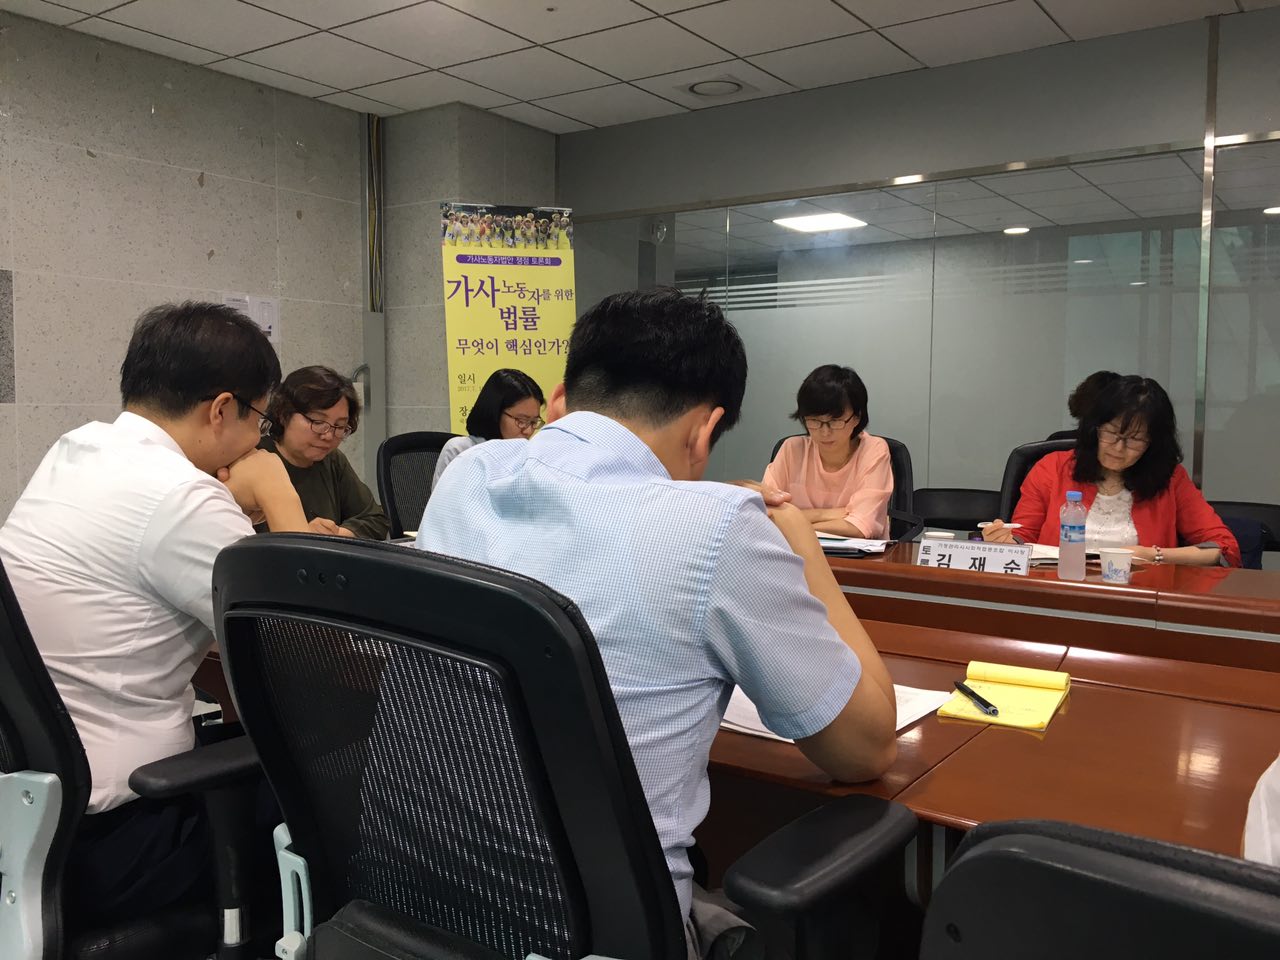 2017년 7월 18일 국회 의원회관 제11간담회실에서 전국가정관리사협회, 한국여성노동자회, 이정미 의원(정의당)이 공동주최에서 <가사노동자 법안 쟁점 토론회> 발제자와 토론자가 서로의 의견을 나누고 있다. 